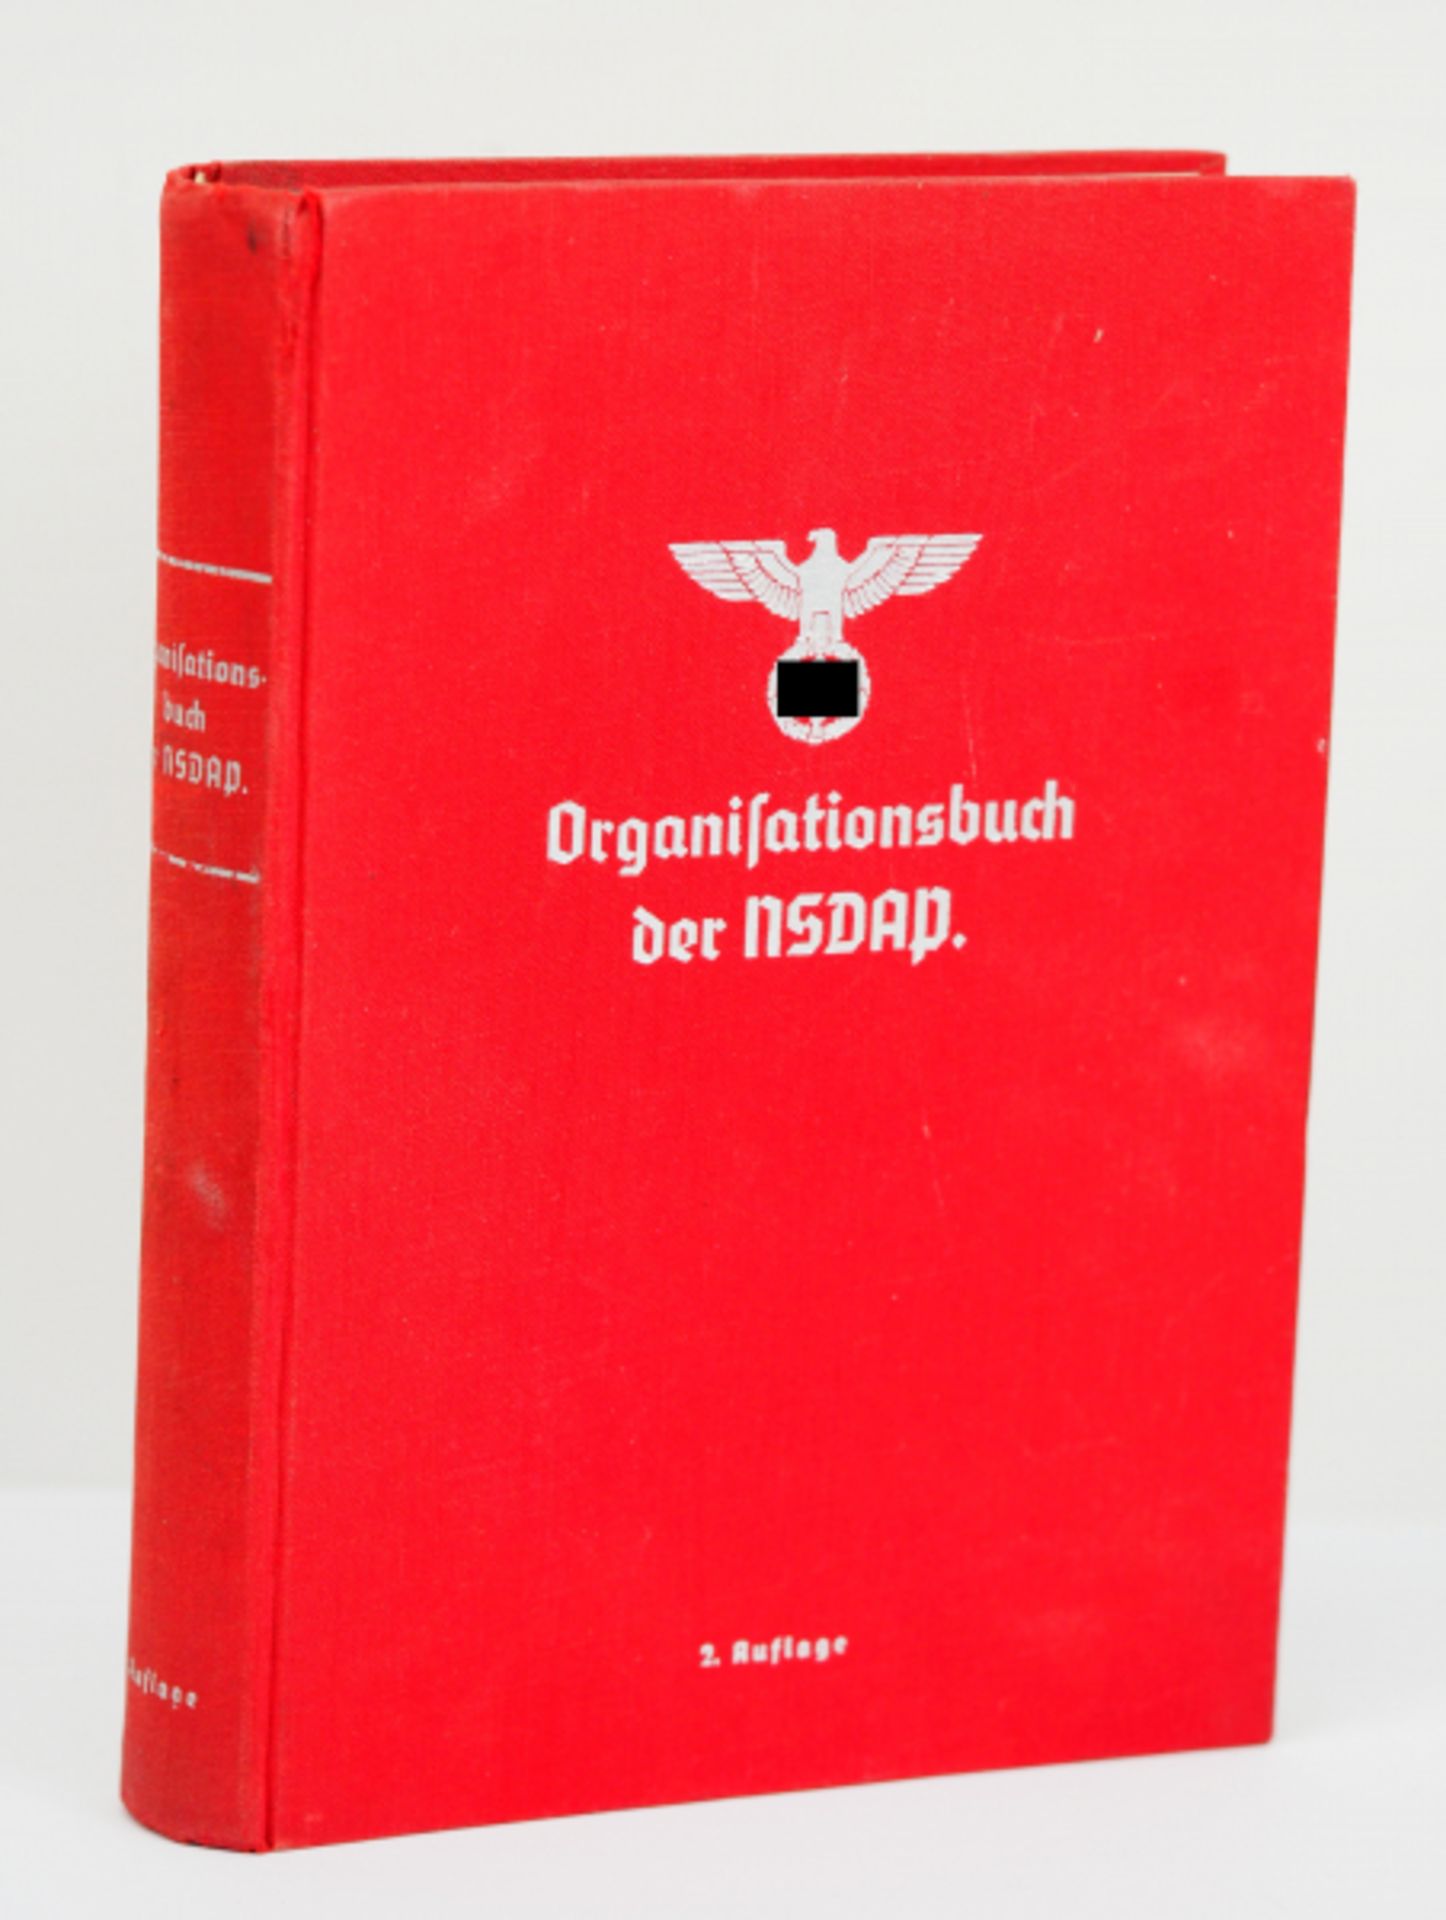 Organisationsbuch der NSDAP.Zentralverlag der NSDAP, München, 1937. Roter Leineneinband mit